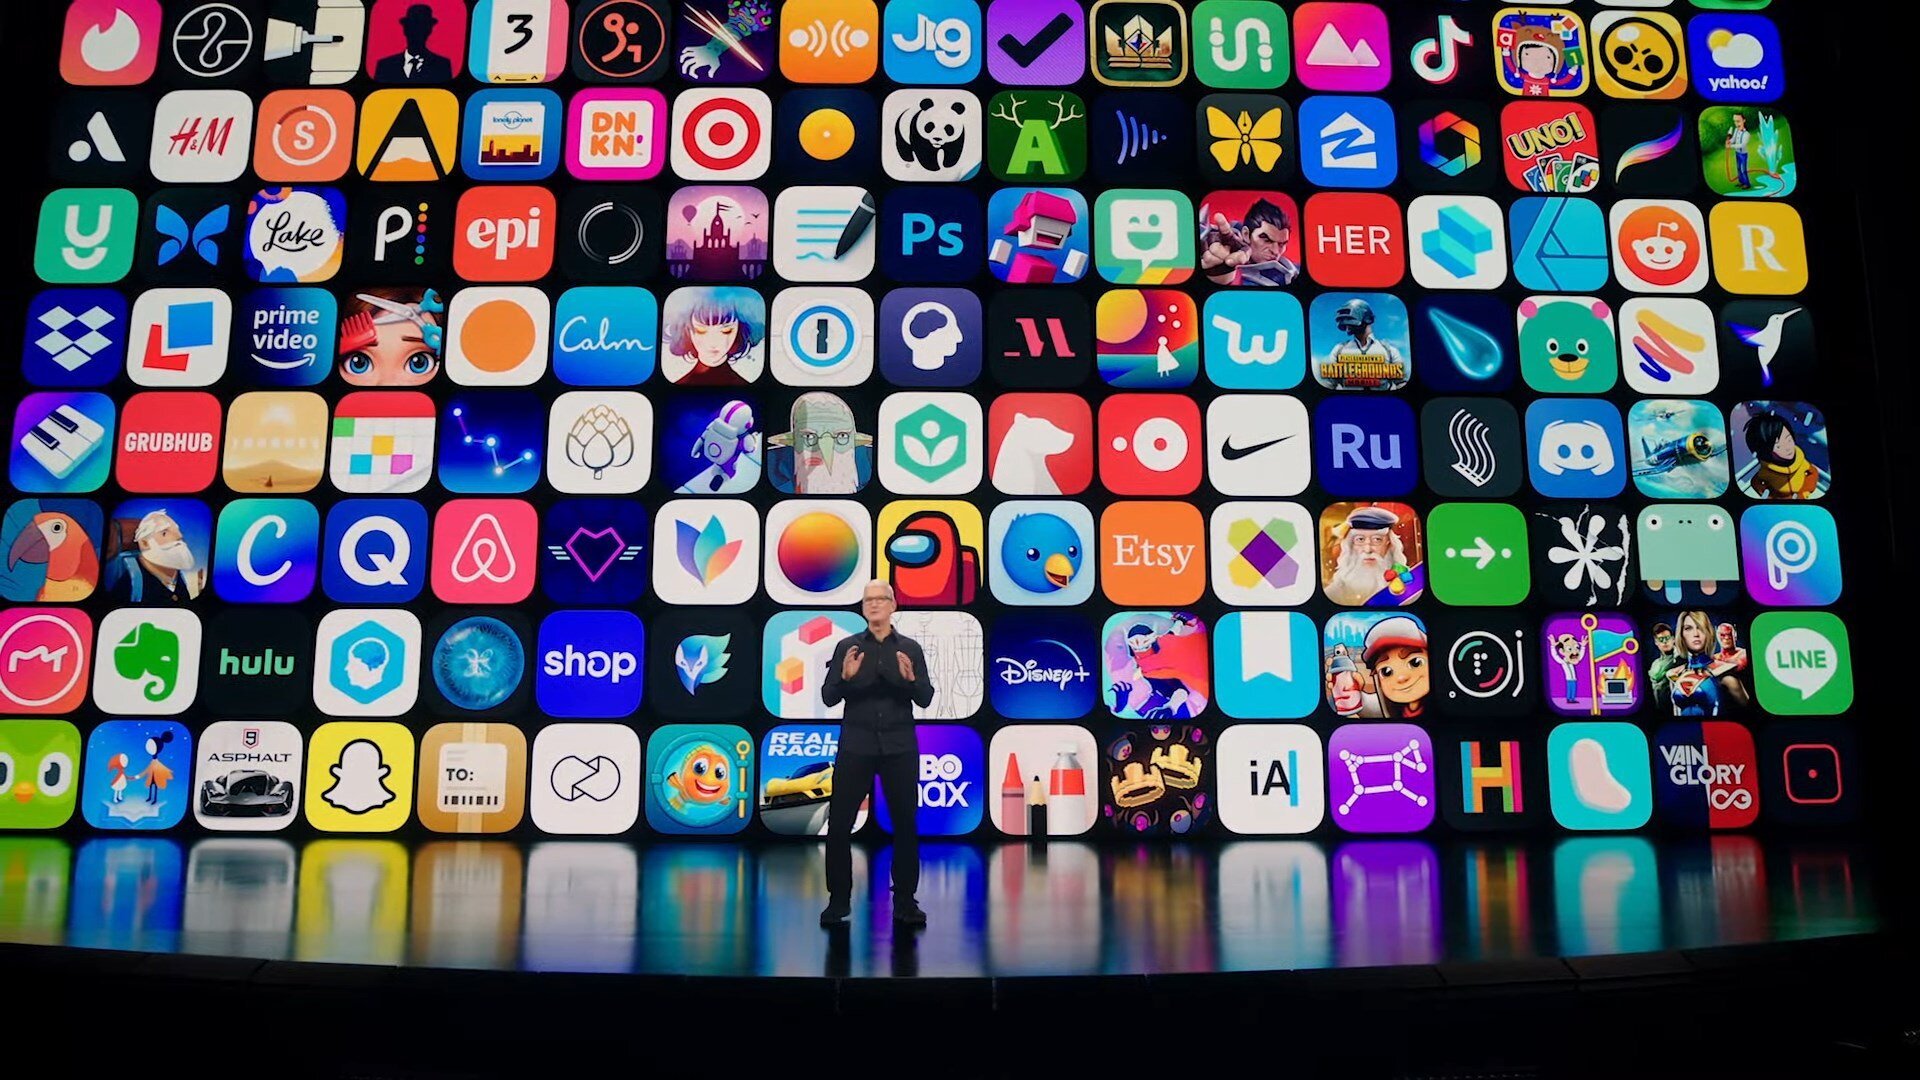 Η Apple ενημερώνει επίσημα ότι το App Store διαθέτει 1.783.232 εφαρμογές και παιχνίδια